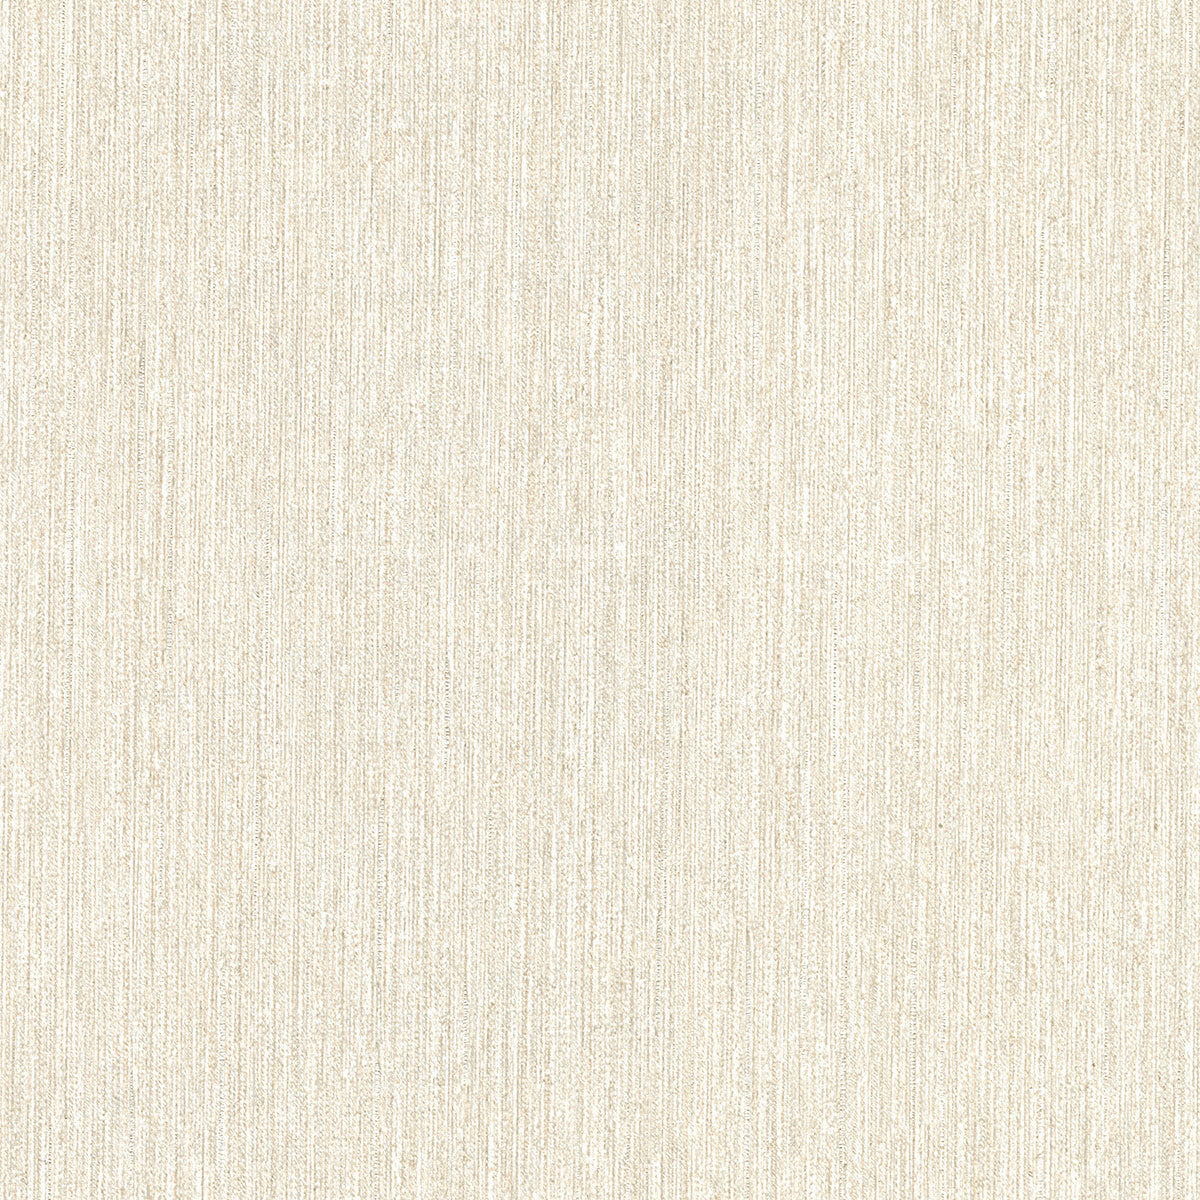 2984-8010 Warner XI Naturals & Grasscloths, Barre Off-White Stria Wallpaper Off-White - Warner